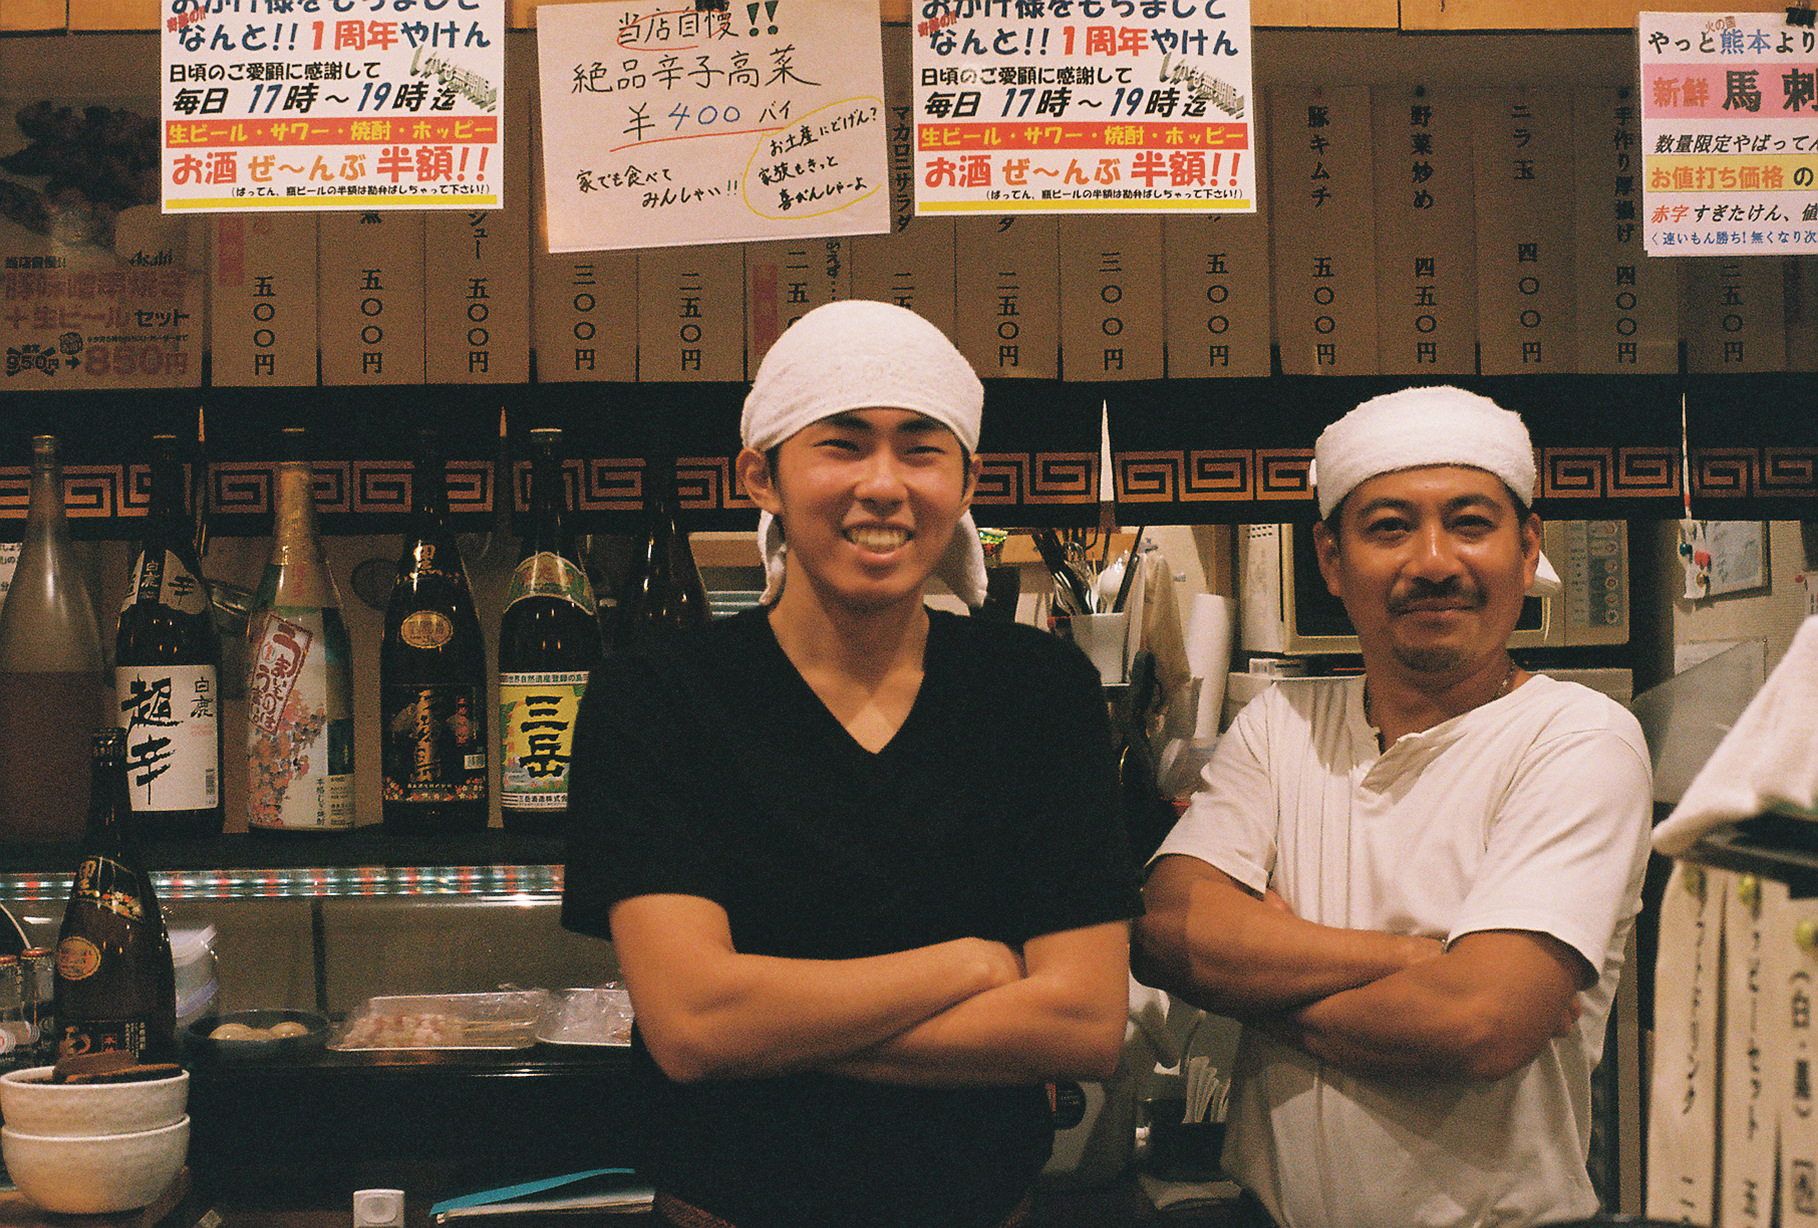 Shinjuku ramen shop owners